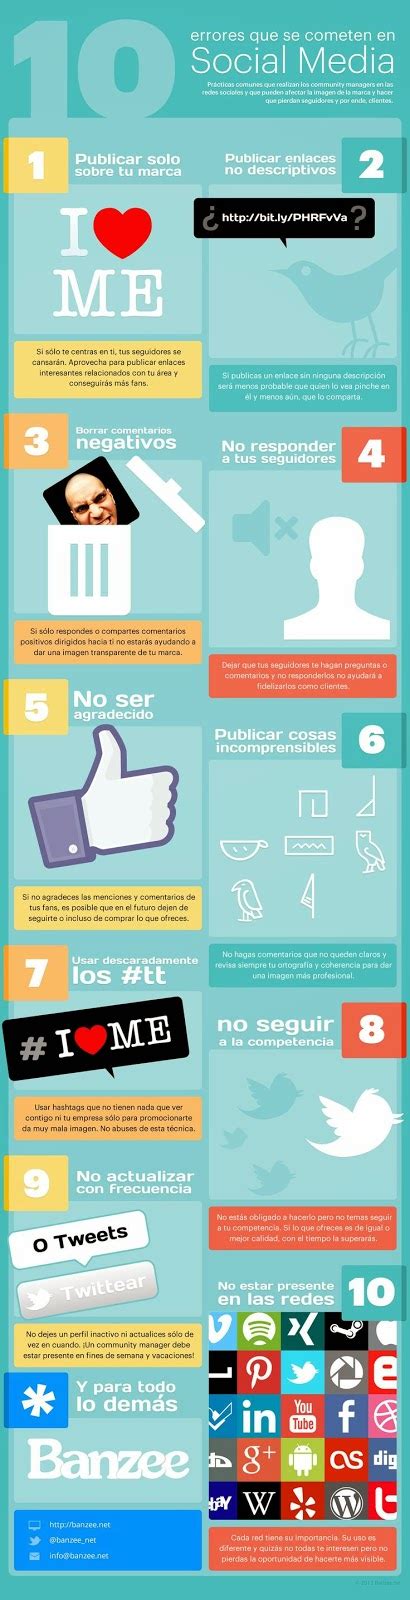 Aidee Valero 10 Errores En Social Media Infografía